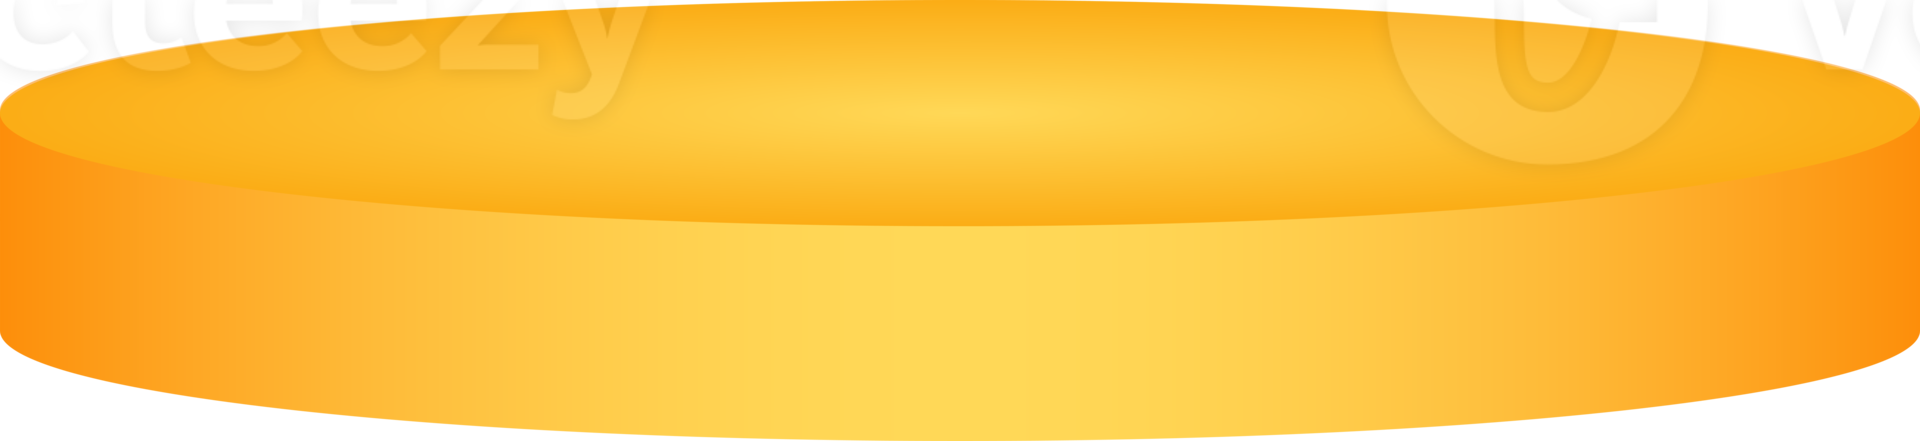 podio amarillo para la presentación del producto. png